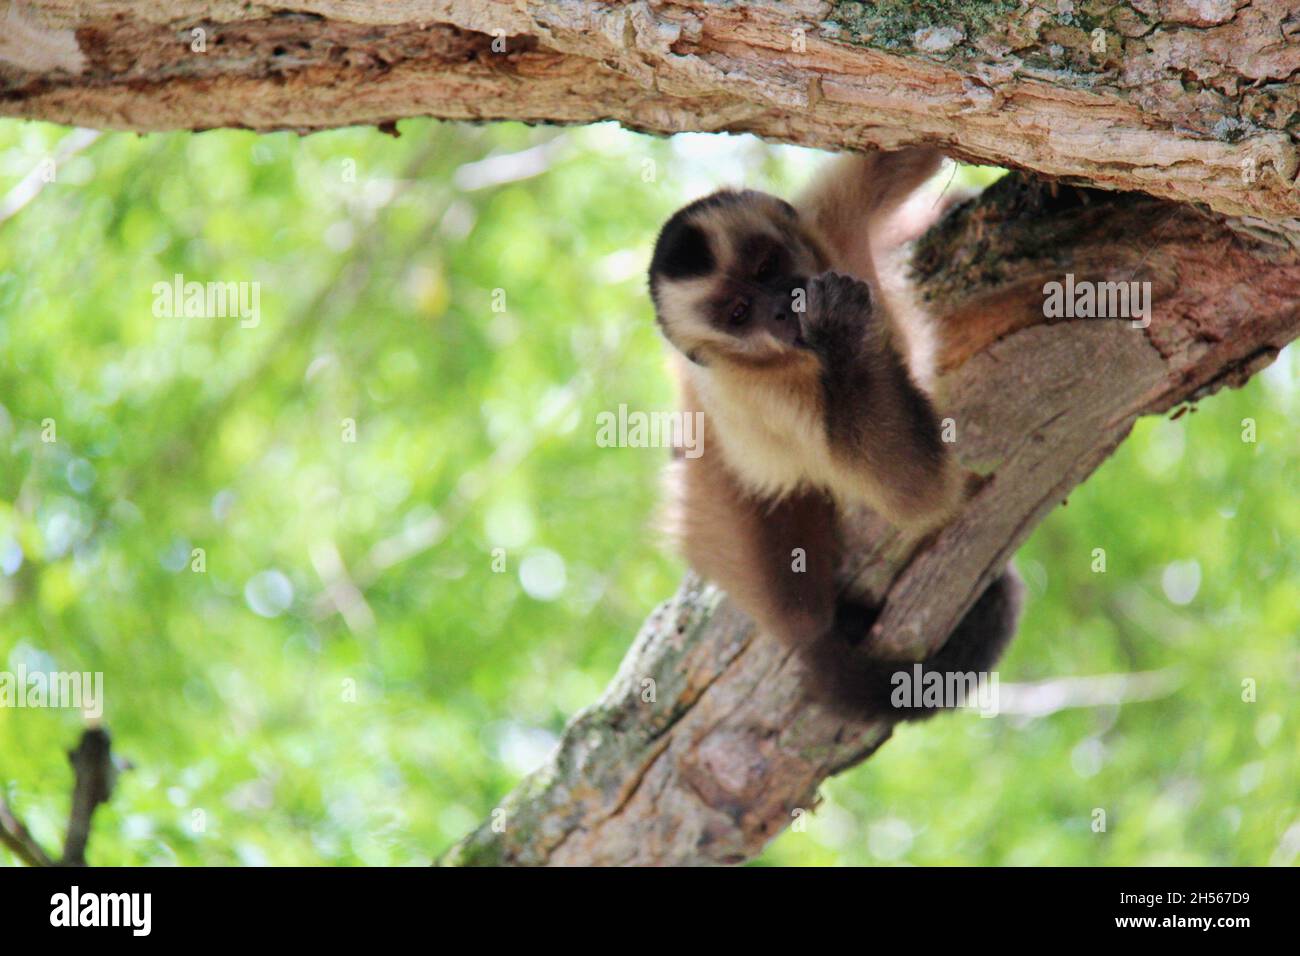 Bébé singe accroché à un journal, suçant le pouce, regardant la caméra photo avec un arrière-plan flou.Bonito - Mato Grosso do Sul - Brésil. Banque D'Images